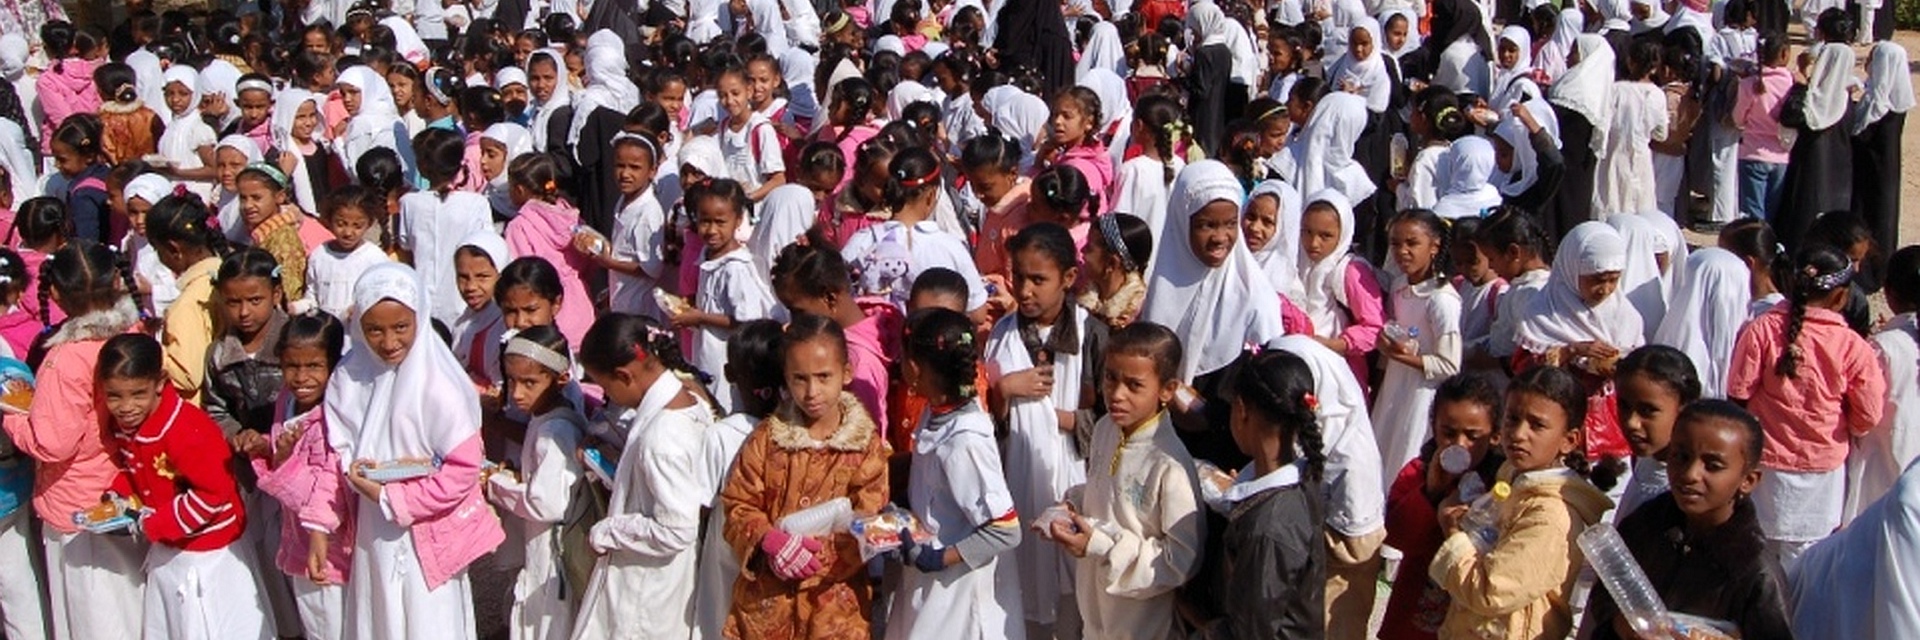 Schulkinder im Jemen